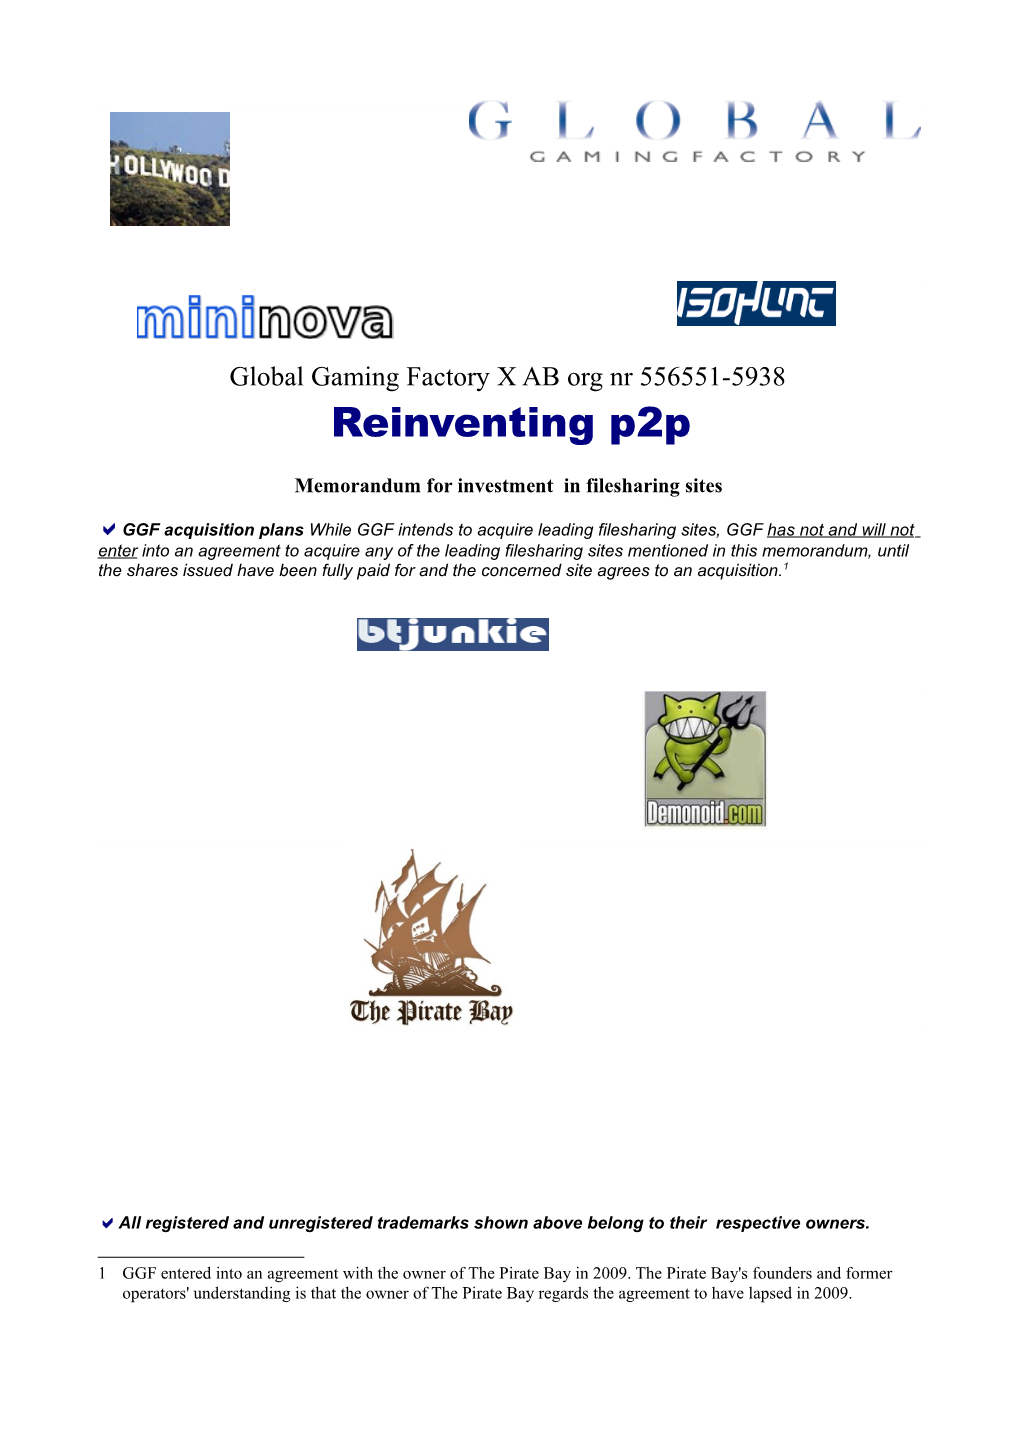 Reinventing P2p